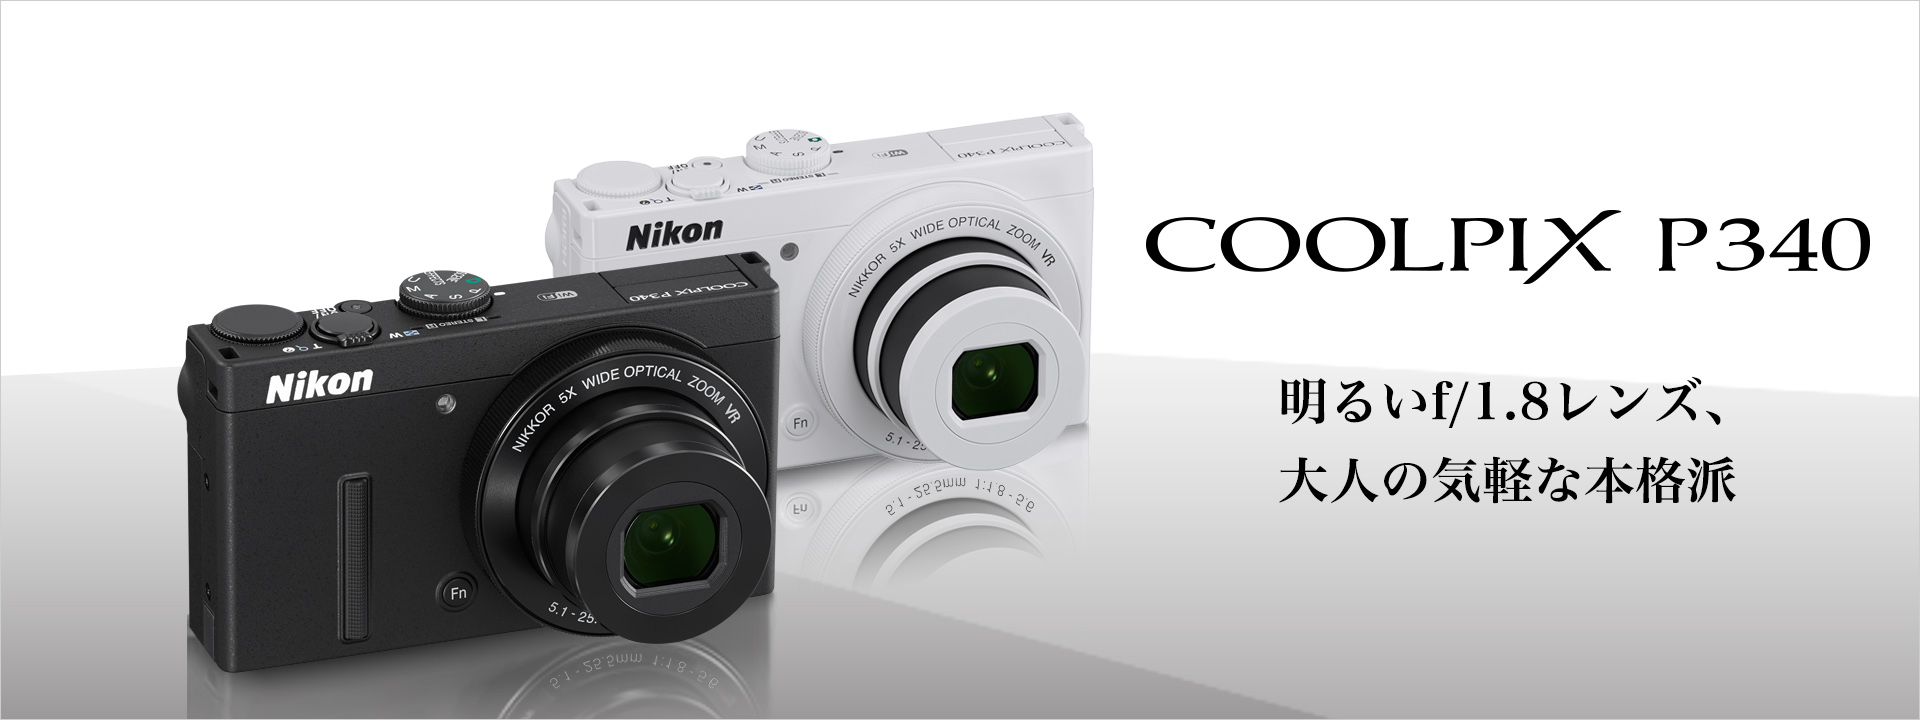 Nikonコンパクトデジタルカメラデジタル一眼 - デジタル一眼